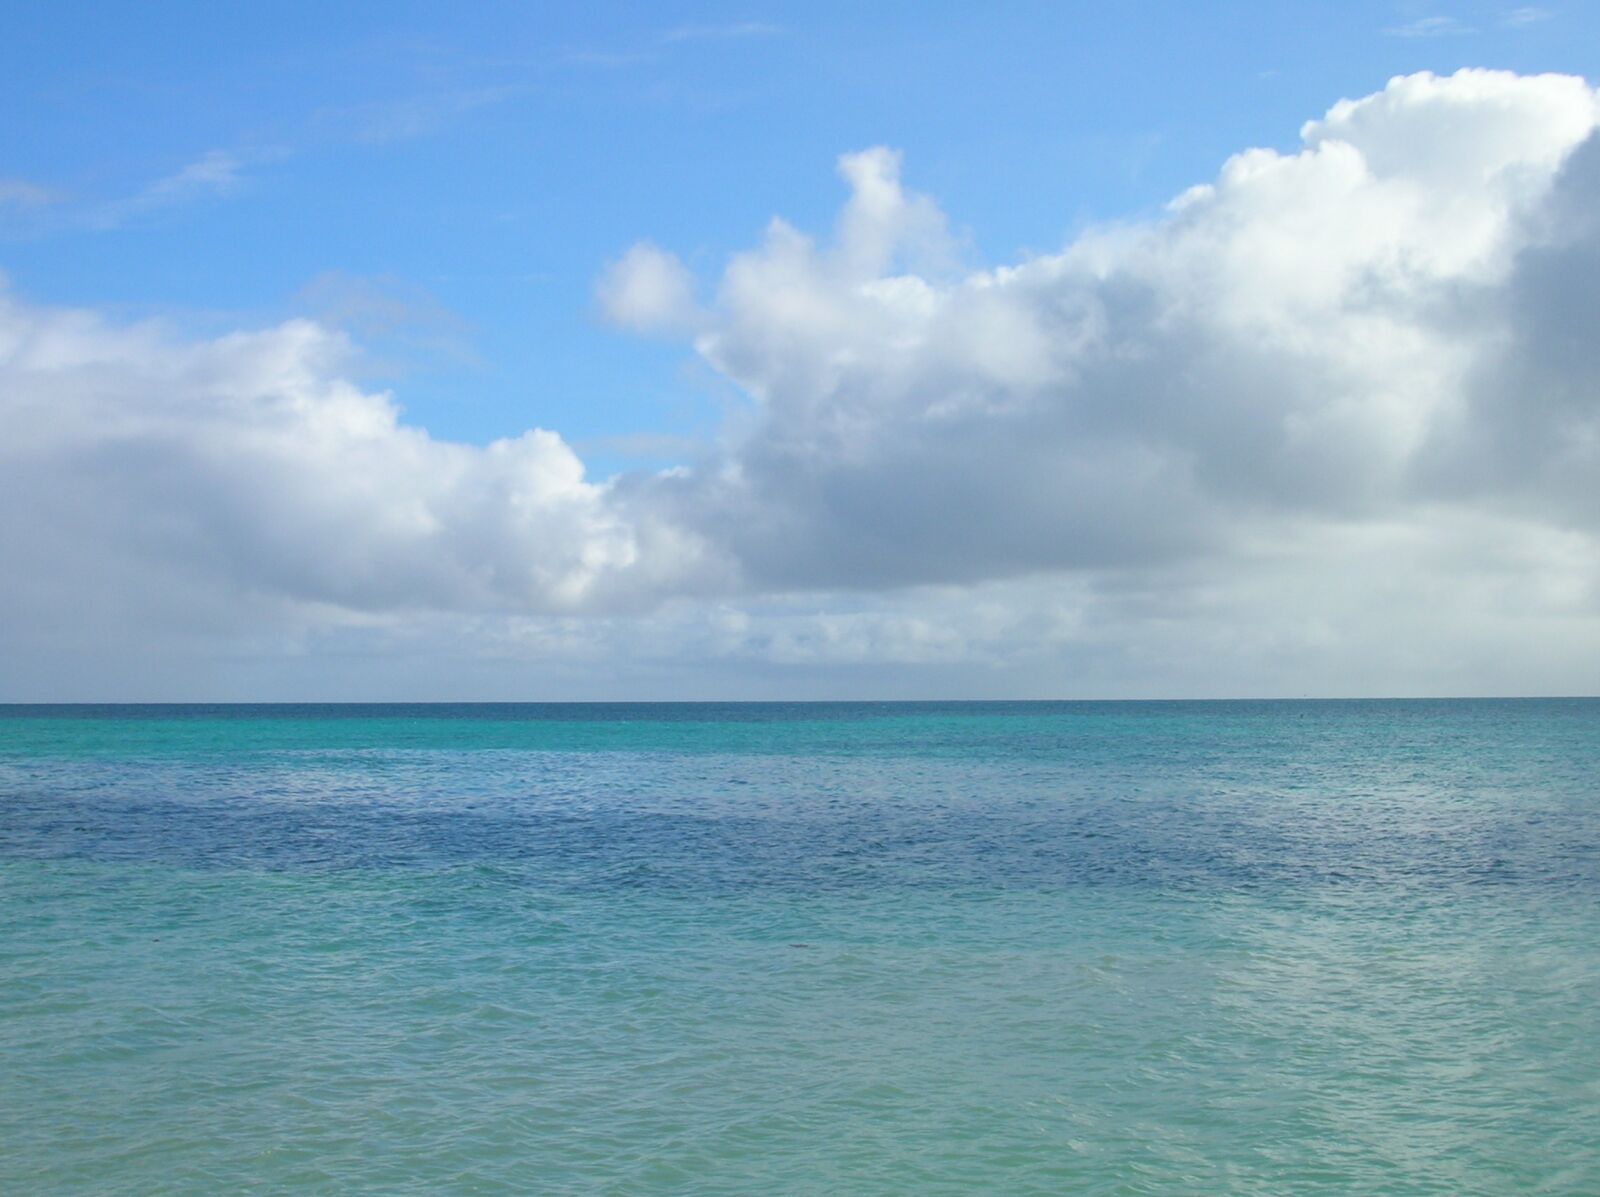 Nikon E4600 sample photo. Ocean, clouds, horizon photography